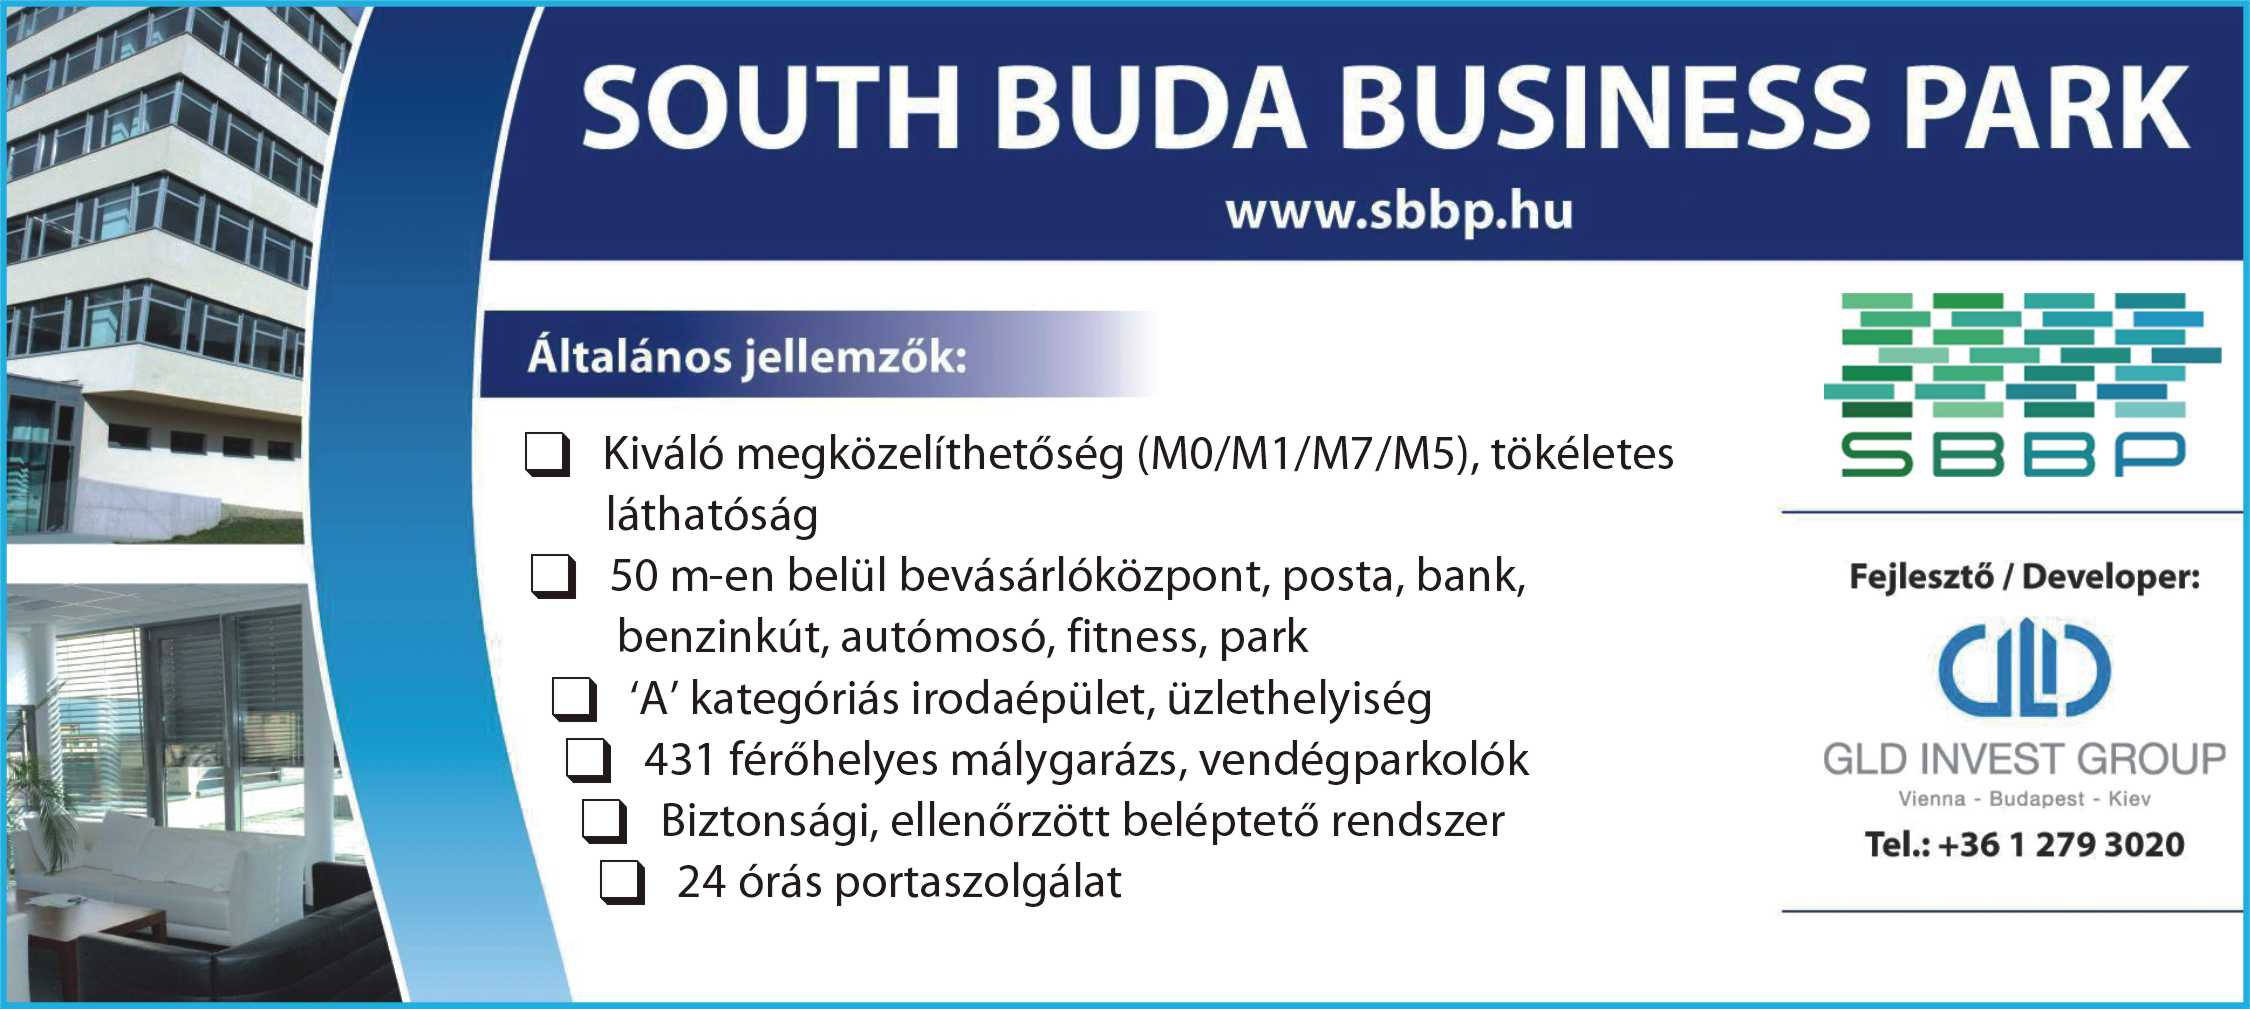 South Buda Business Park  Irodaház, kiadó iroda